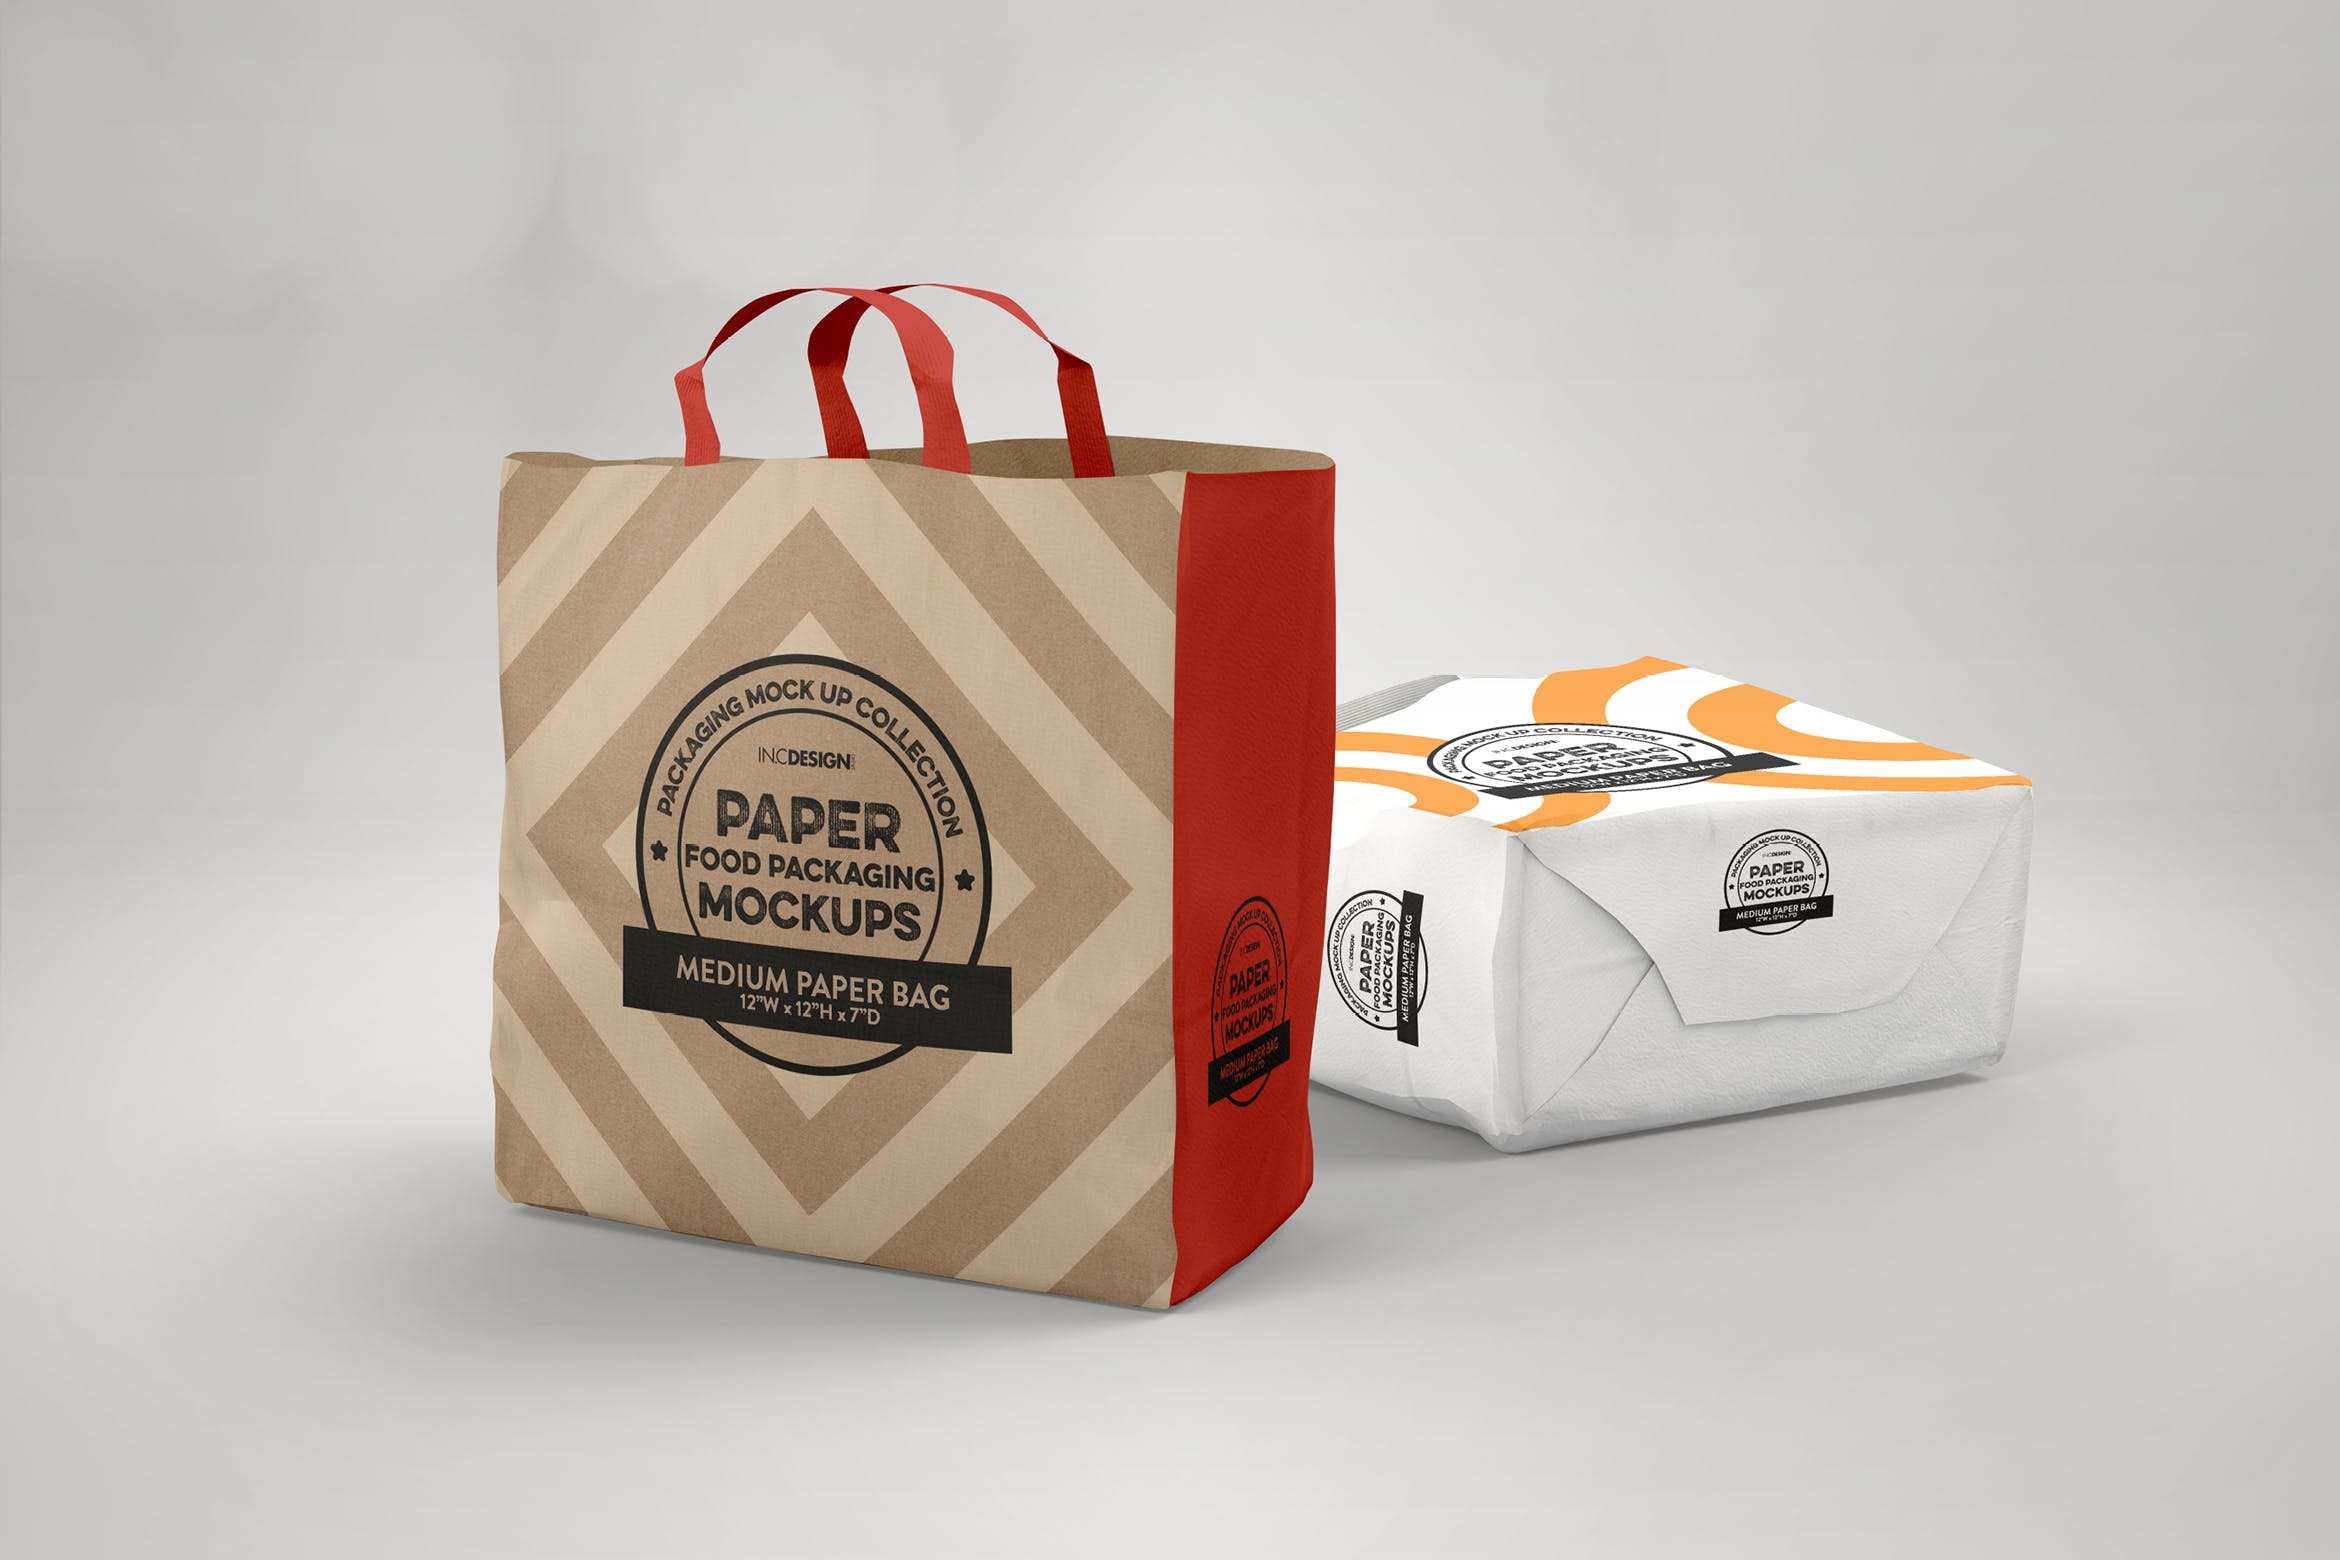 中型纸袋包装设计效果图第一素材精选 Medium Paper Bags Packaging Mockup插图